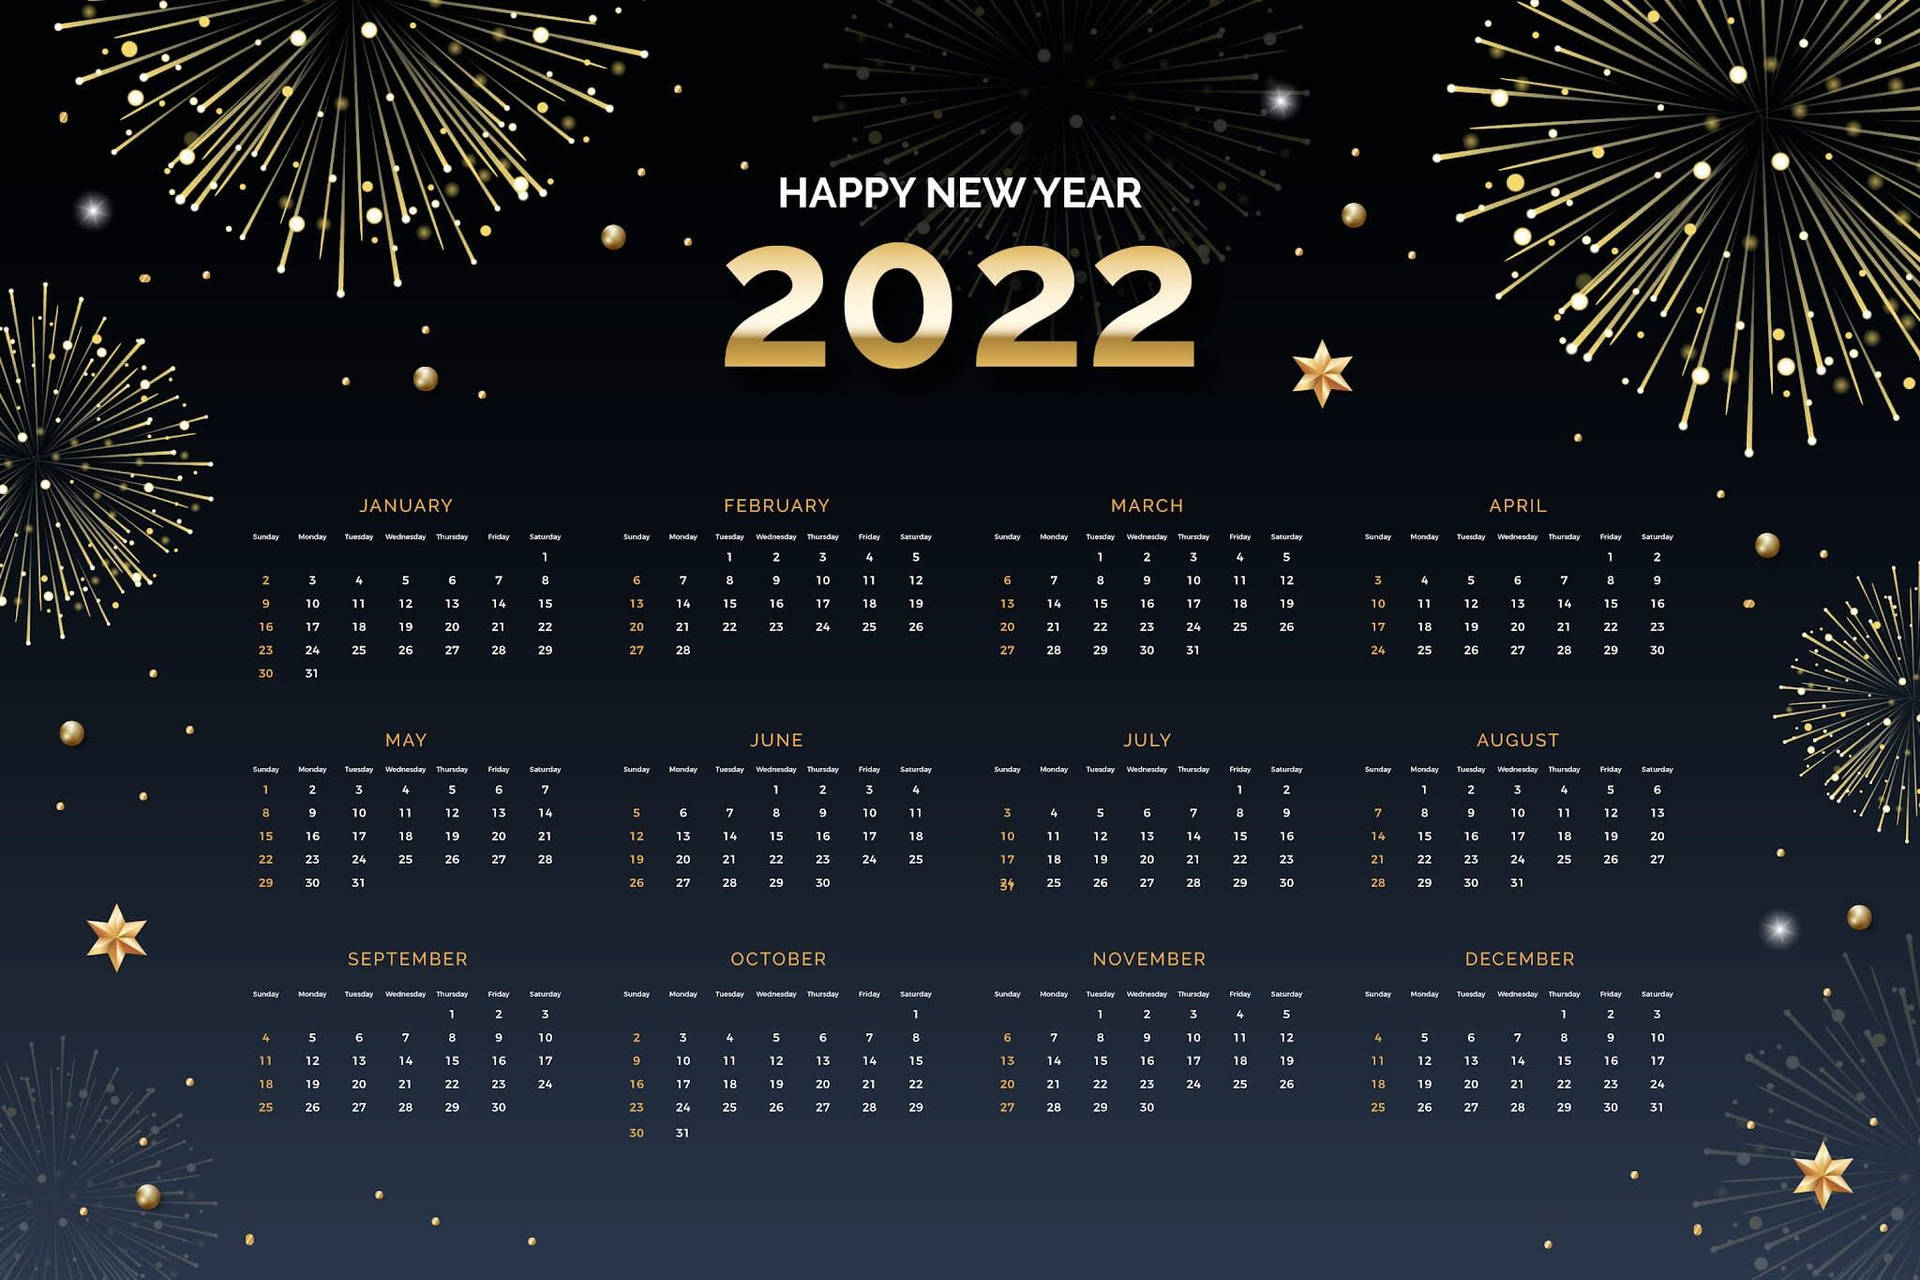 2022 Calendar With Fireworks Wallpaper